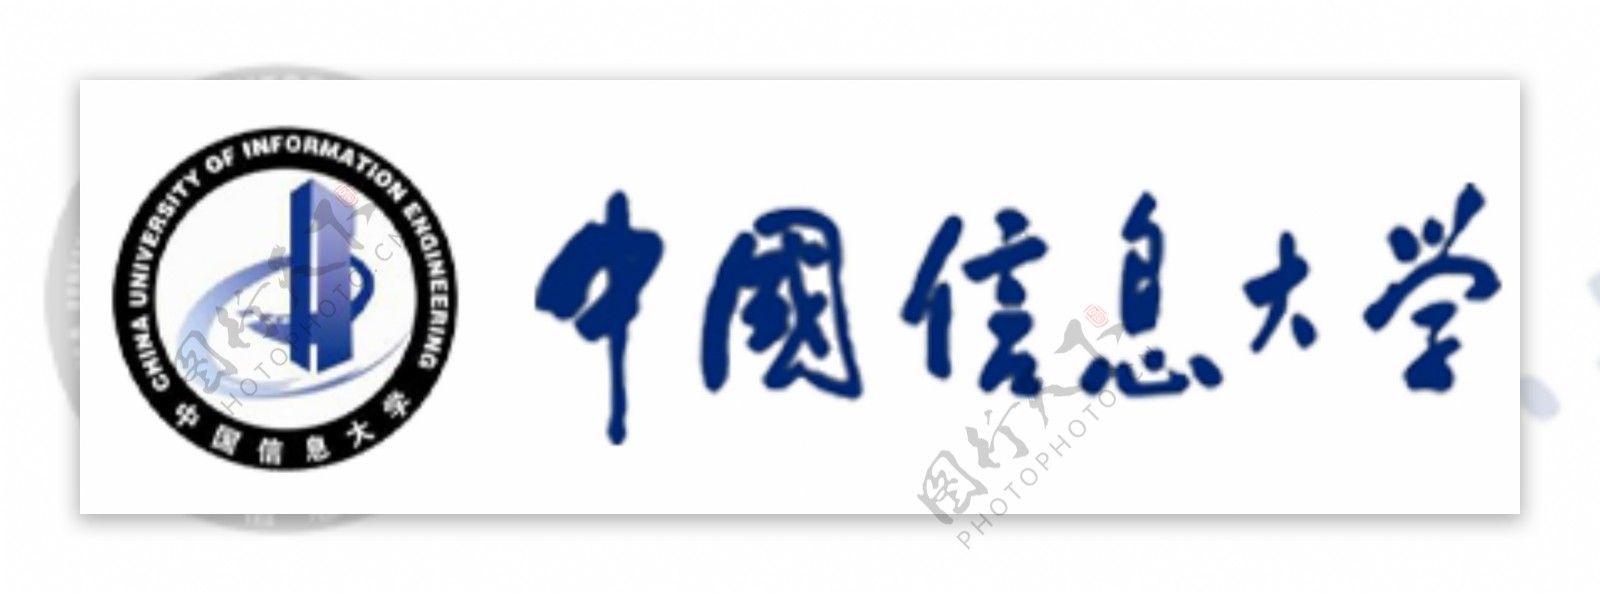 中国信息大学logo设计